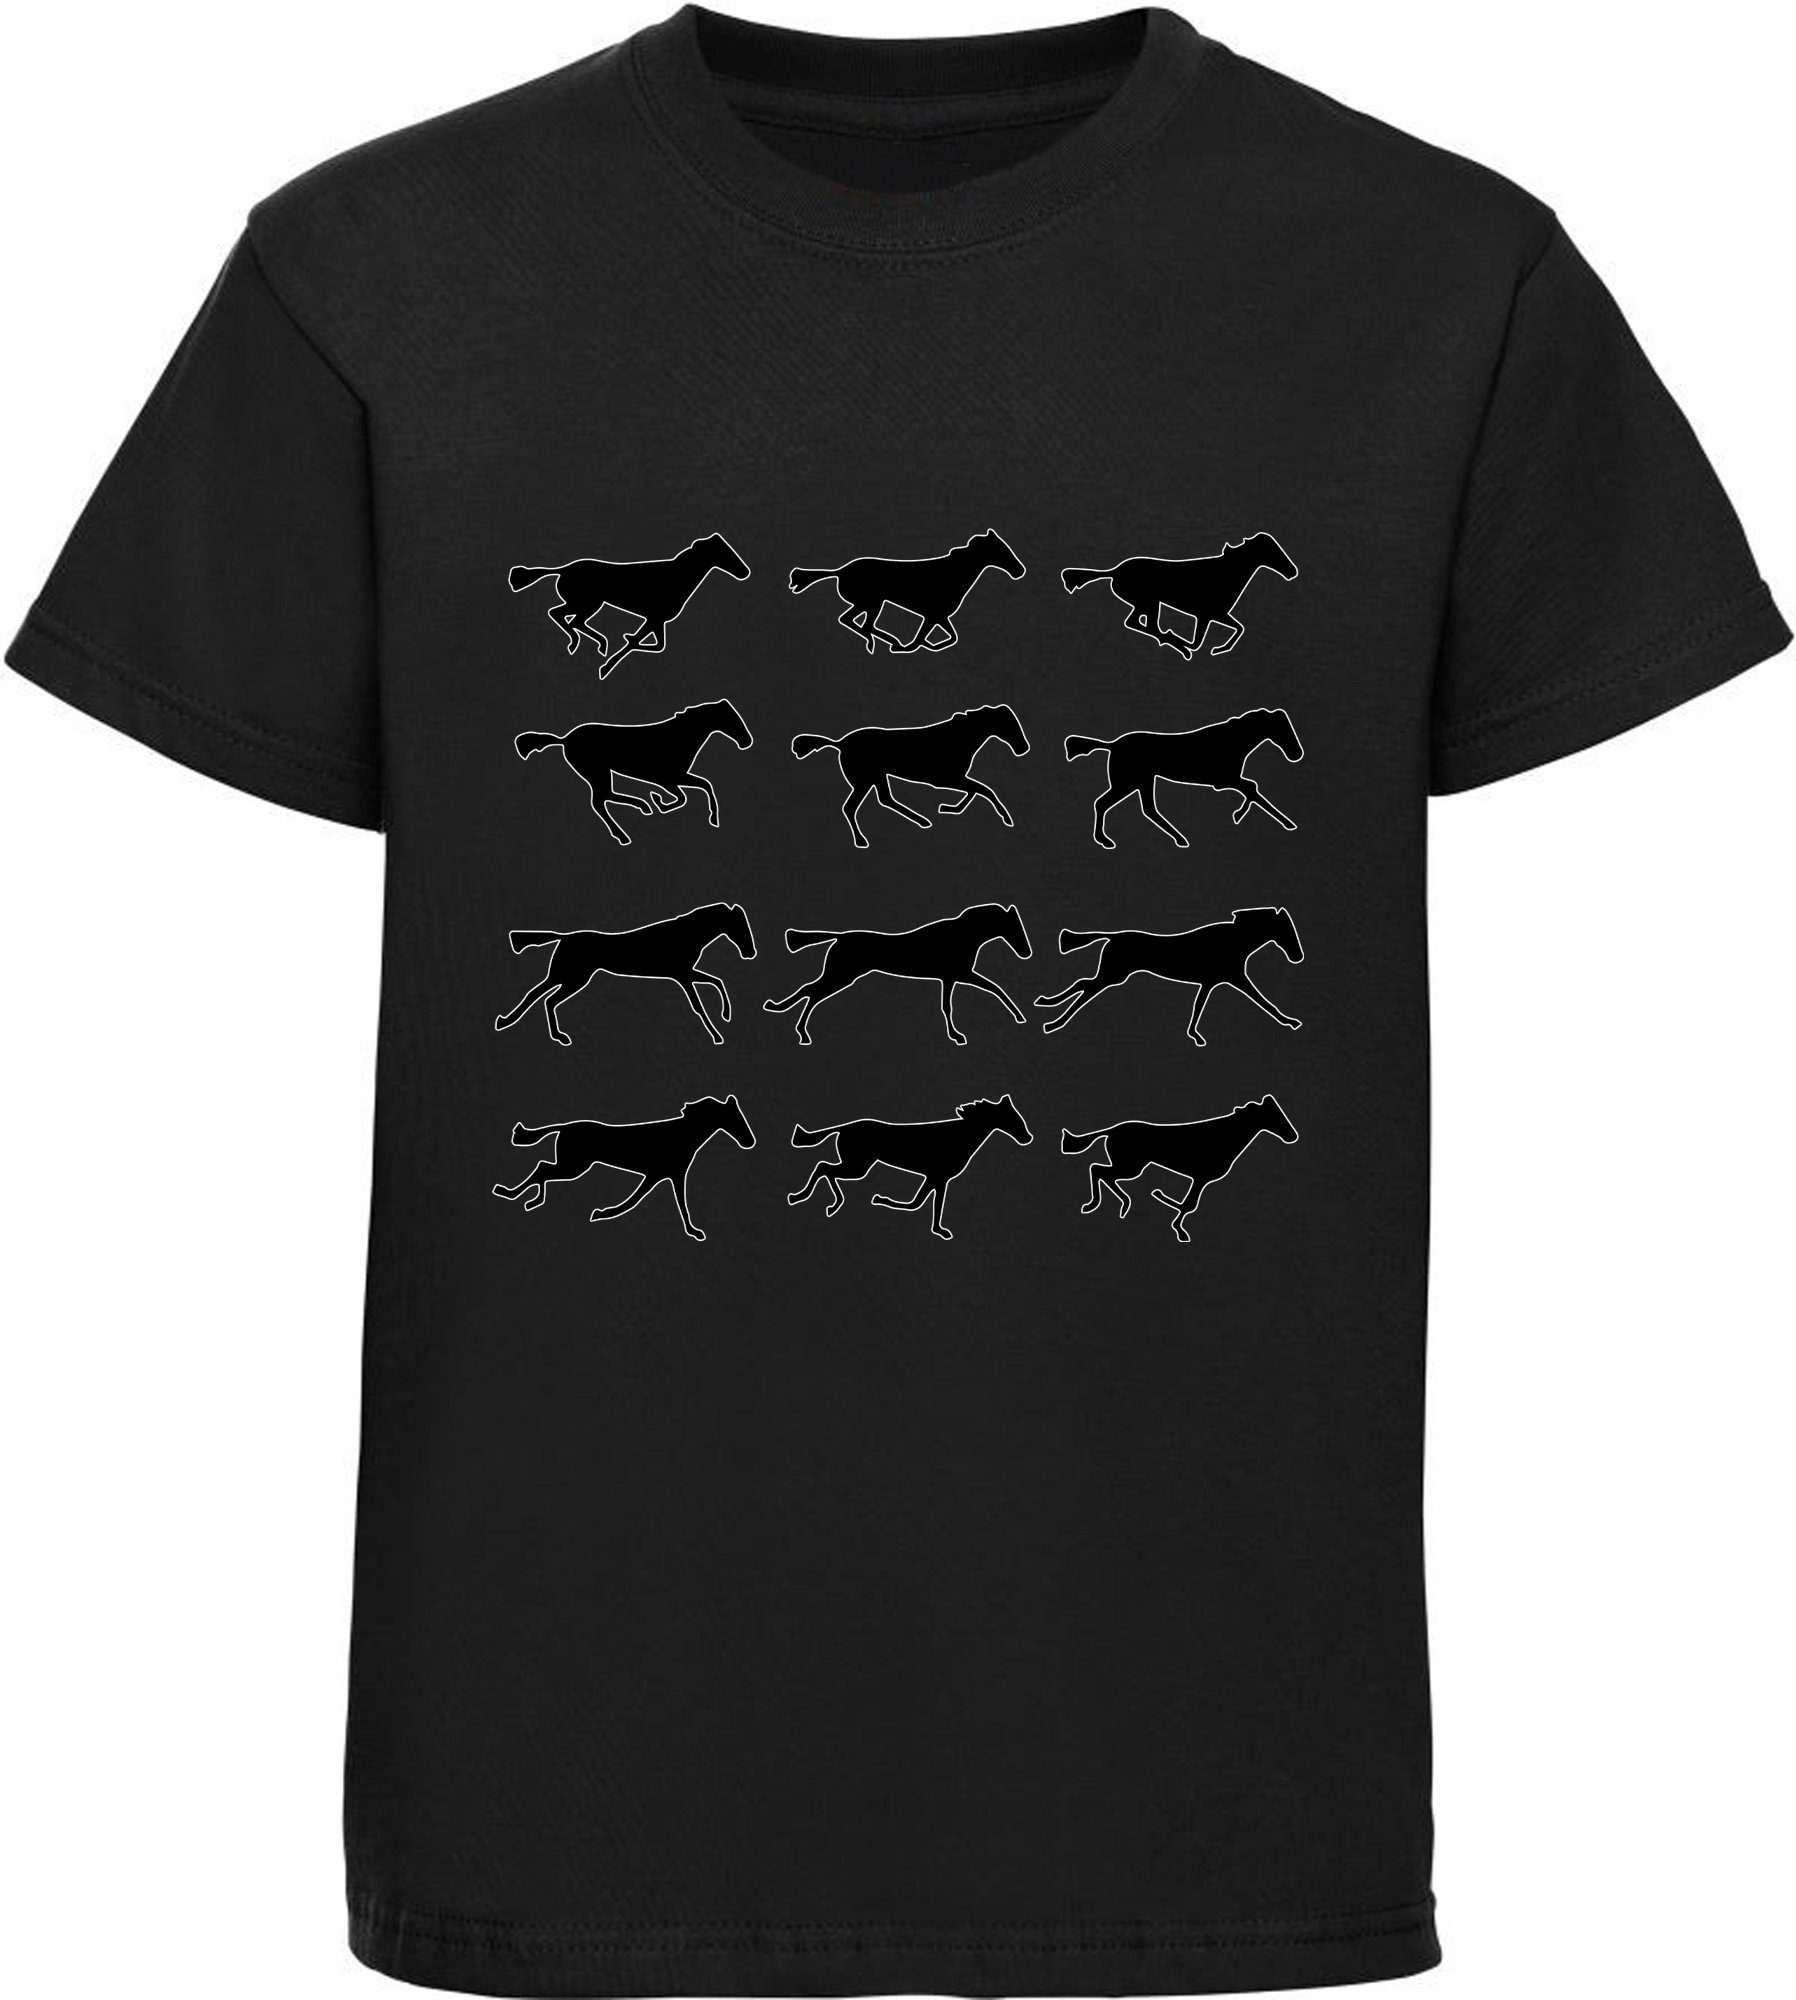 MyDesign24 Baumwollshirt i173 Print-Shirt schwarz Mädchen bedrucktes T-Shirt Silhouetten - Aufdruck, mit Pferden von